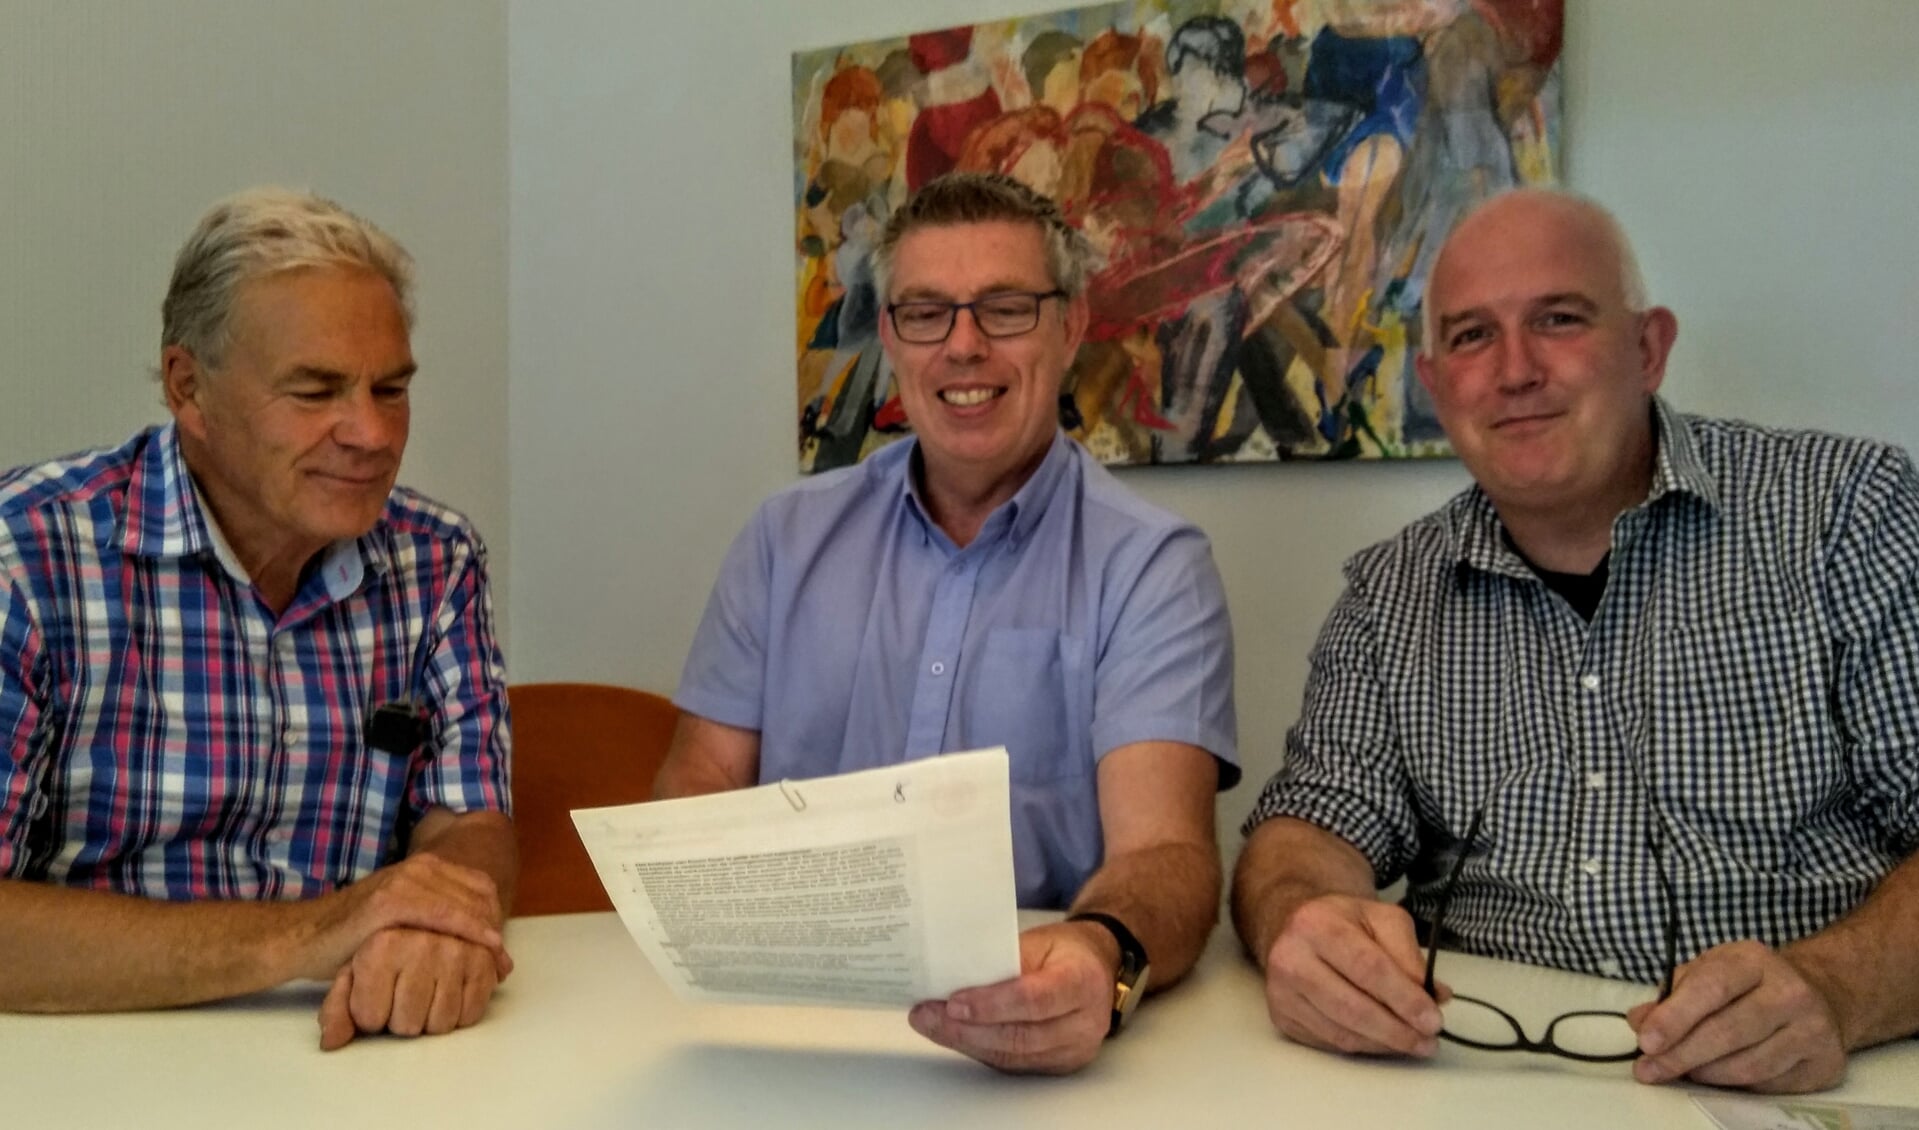 De officiële ondertekening door Cees Schippers (IJsclub), Rob van Kommer (Harmonie) en Frans van de Craats (Oranjevereniging).  